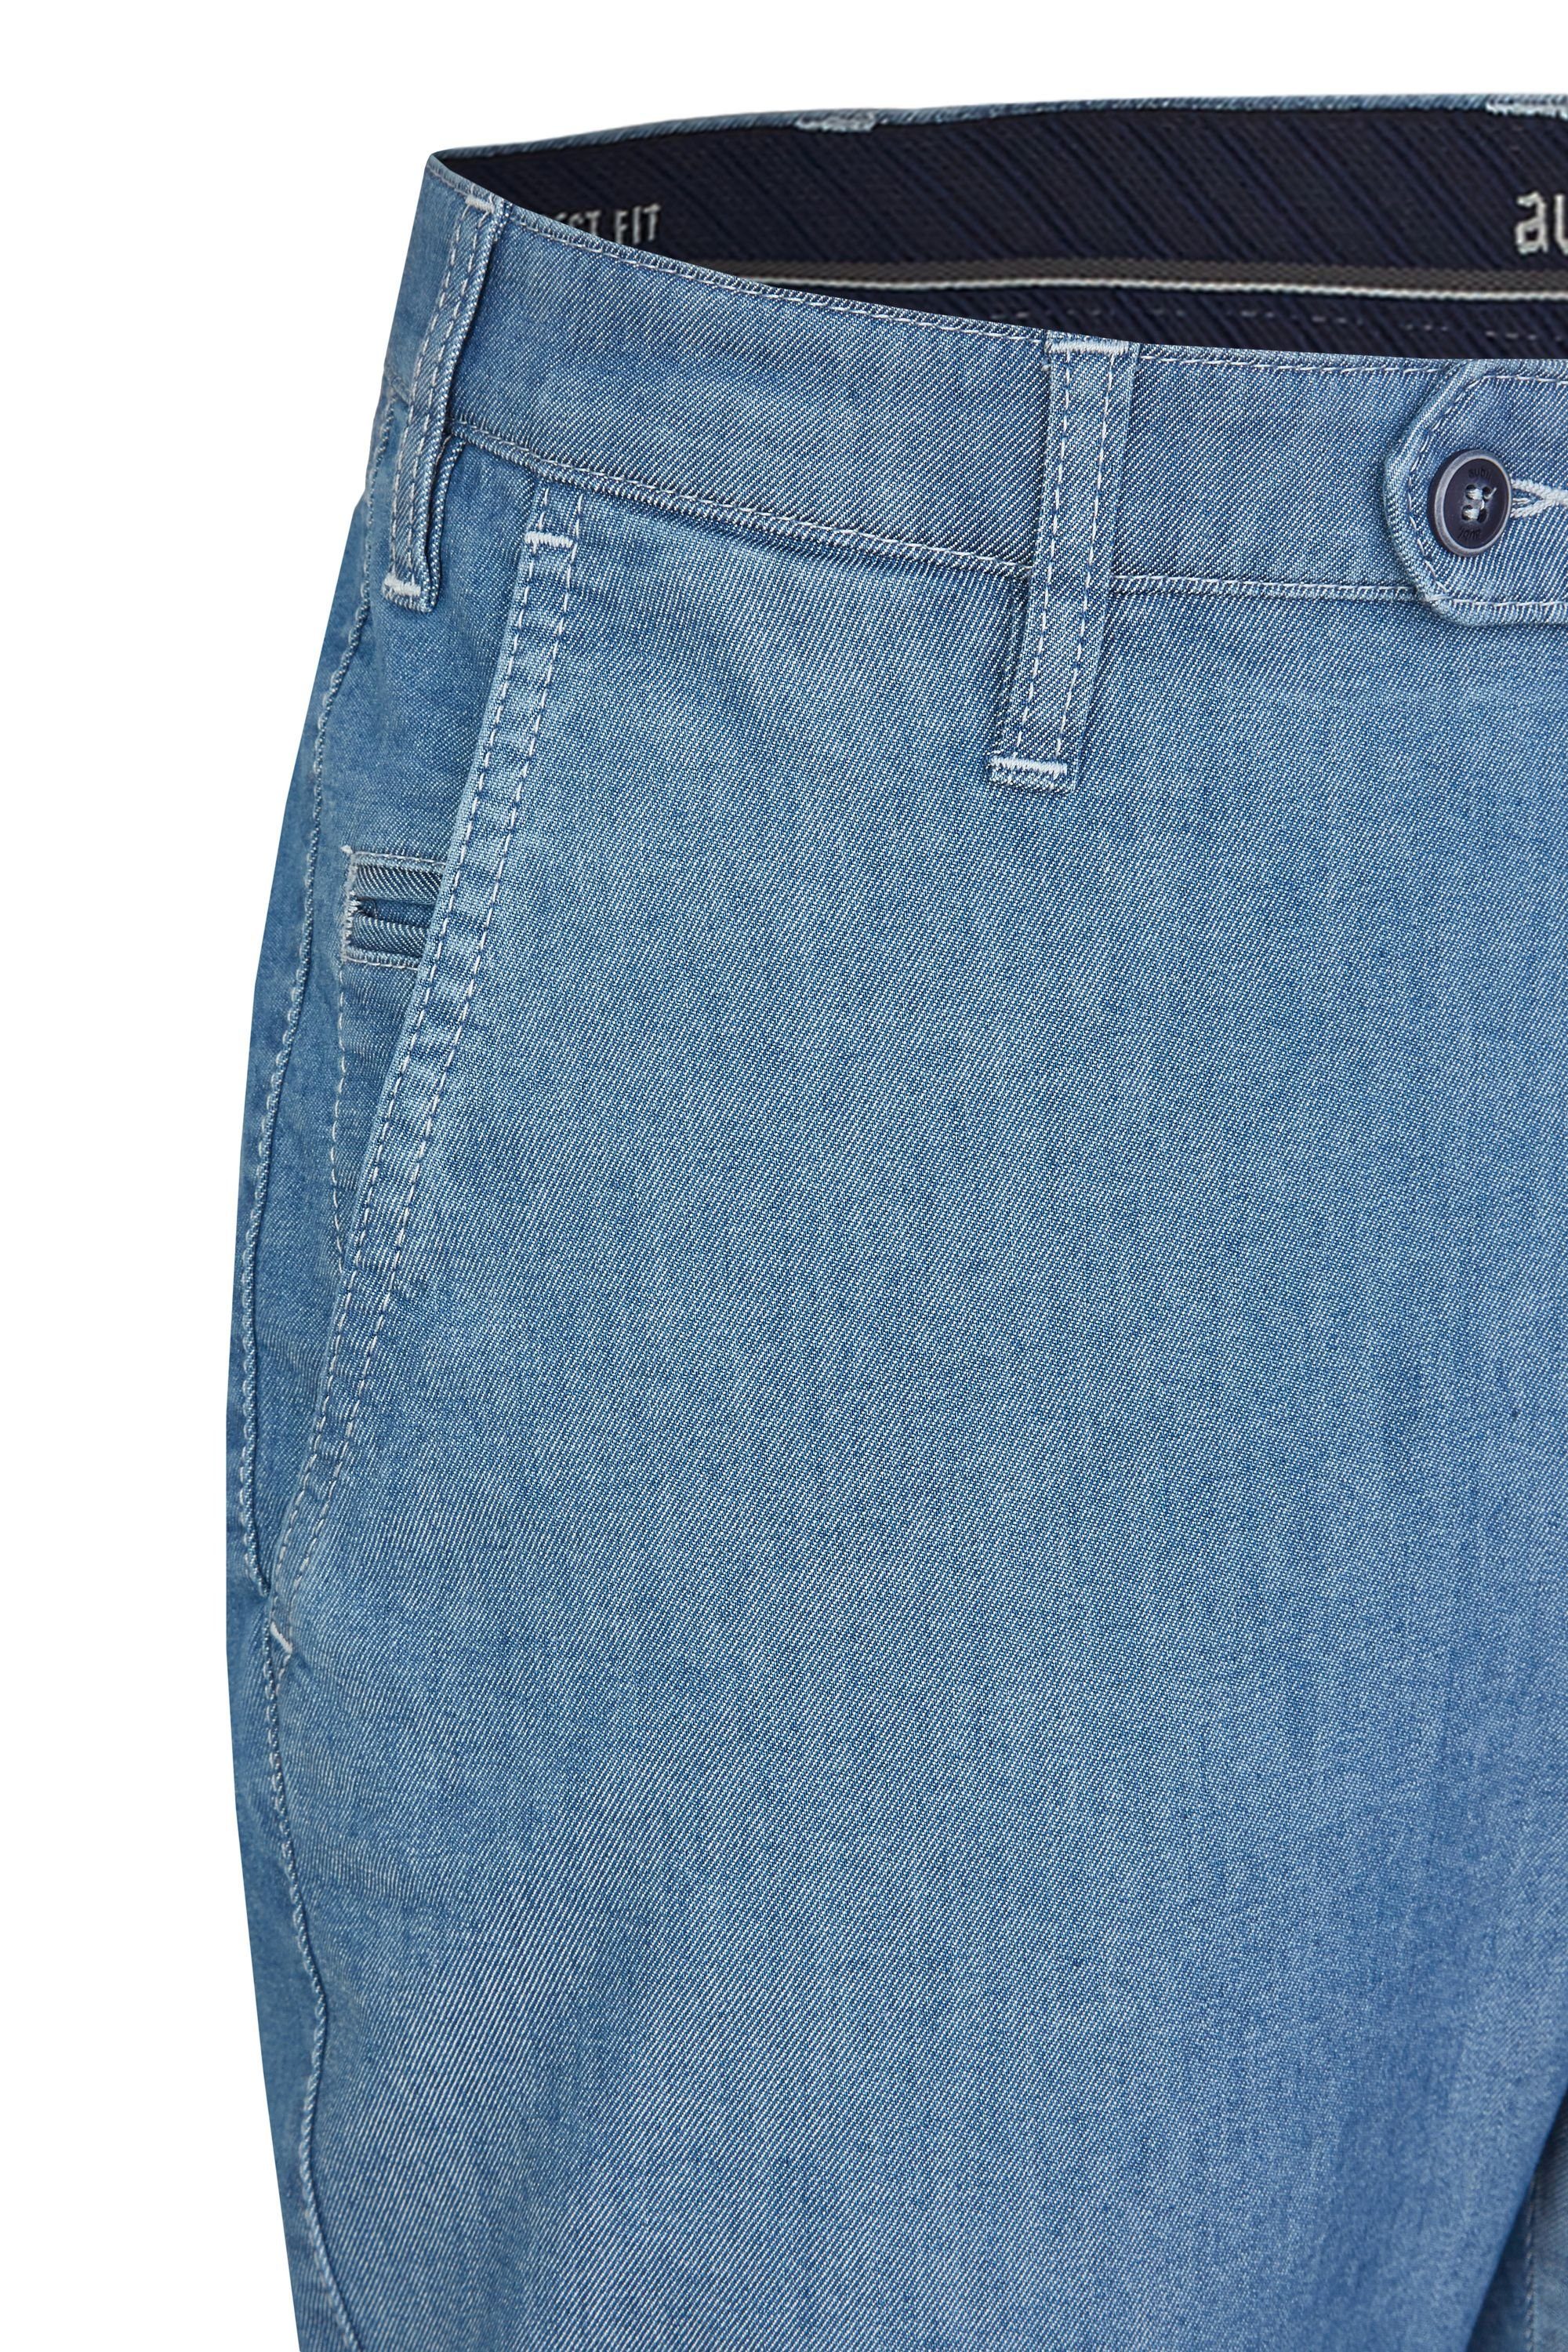 Modell 526 Sommer Jeans Stretch Bequeme Fit bleached High Jeans aubi: Herren Perfect Flex Hose aubi Baumwolle (43) aus